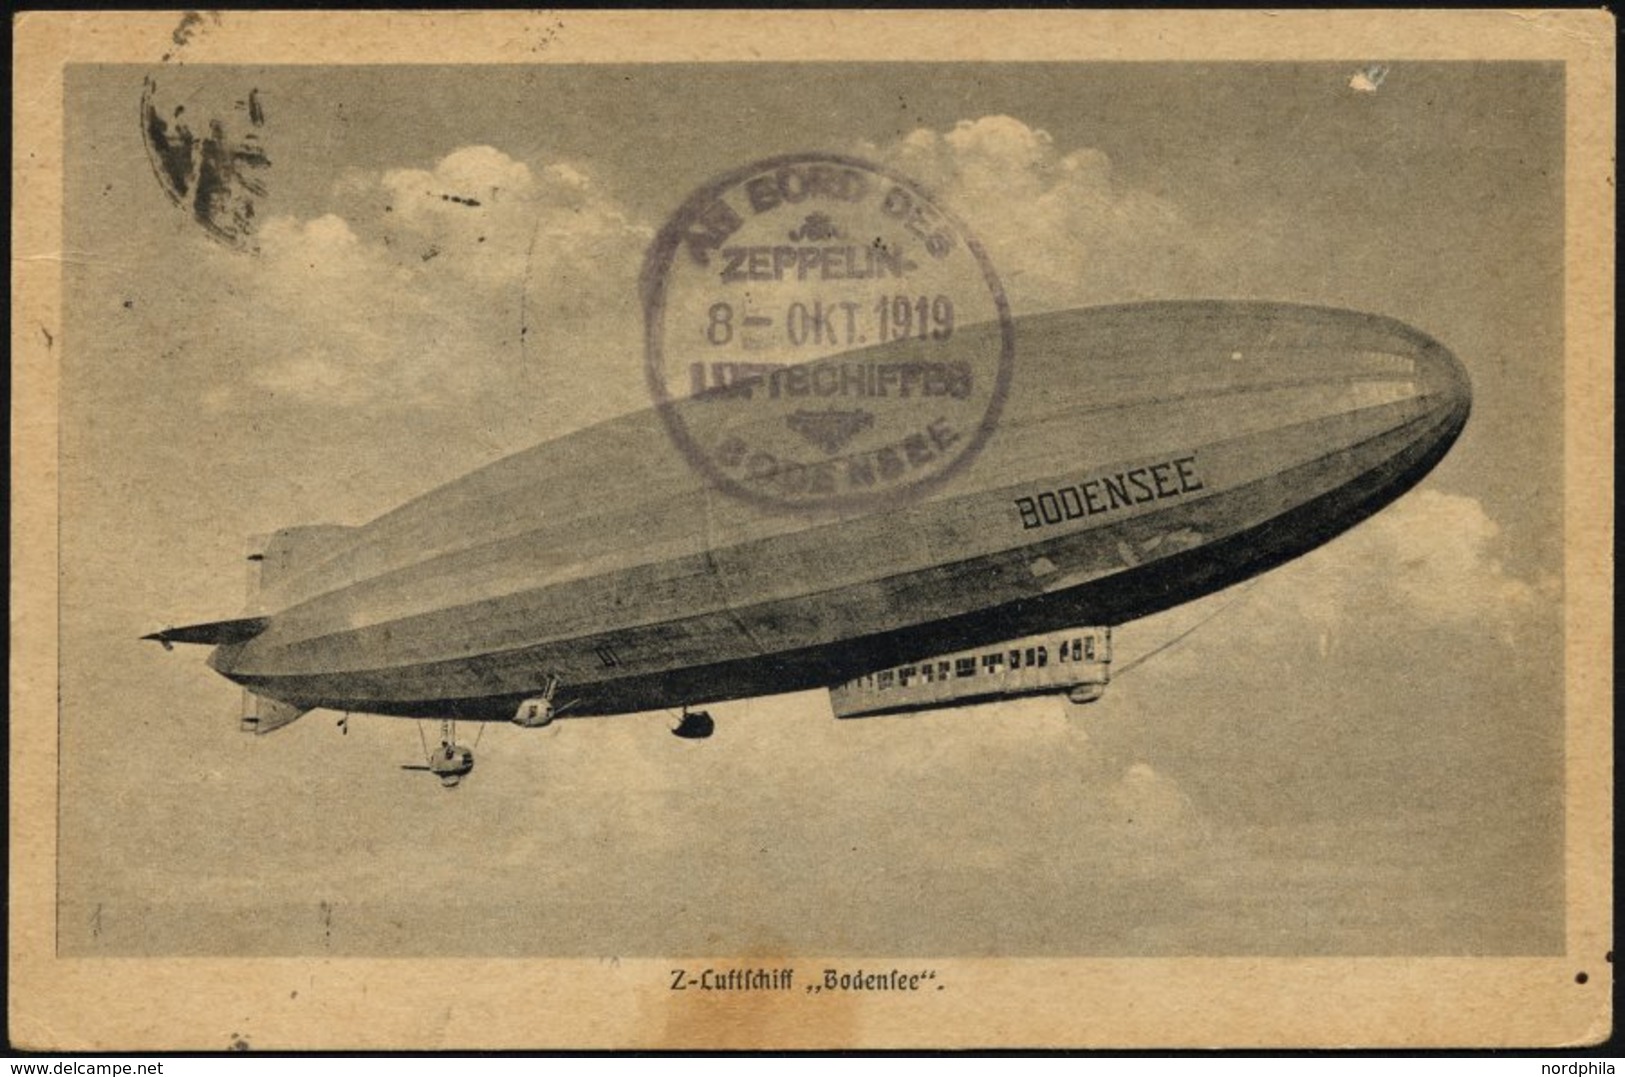 ZEPPELINPOST 19M BRIEF, 1919, Luftschiff Bodensee - Sonderfahrt Nach Stockholm, Rückfahrt Mit Deutscher Frankatur, Prach - Luft- Und Zeppelinpost